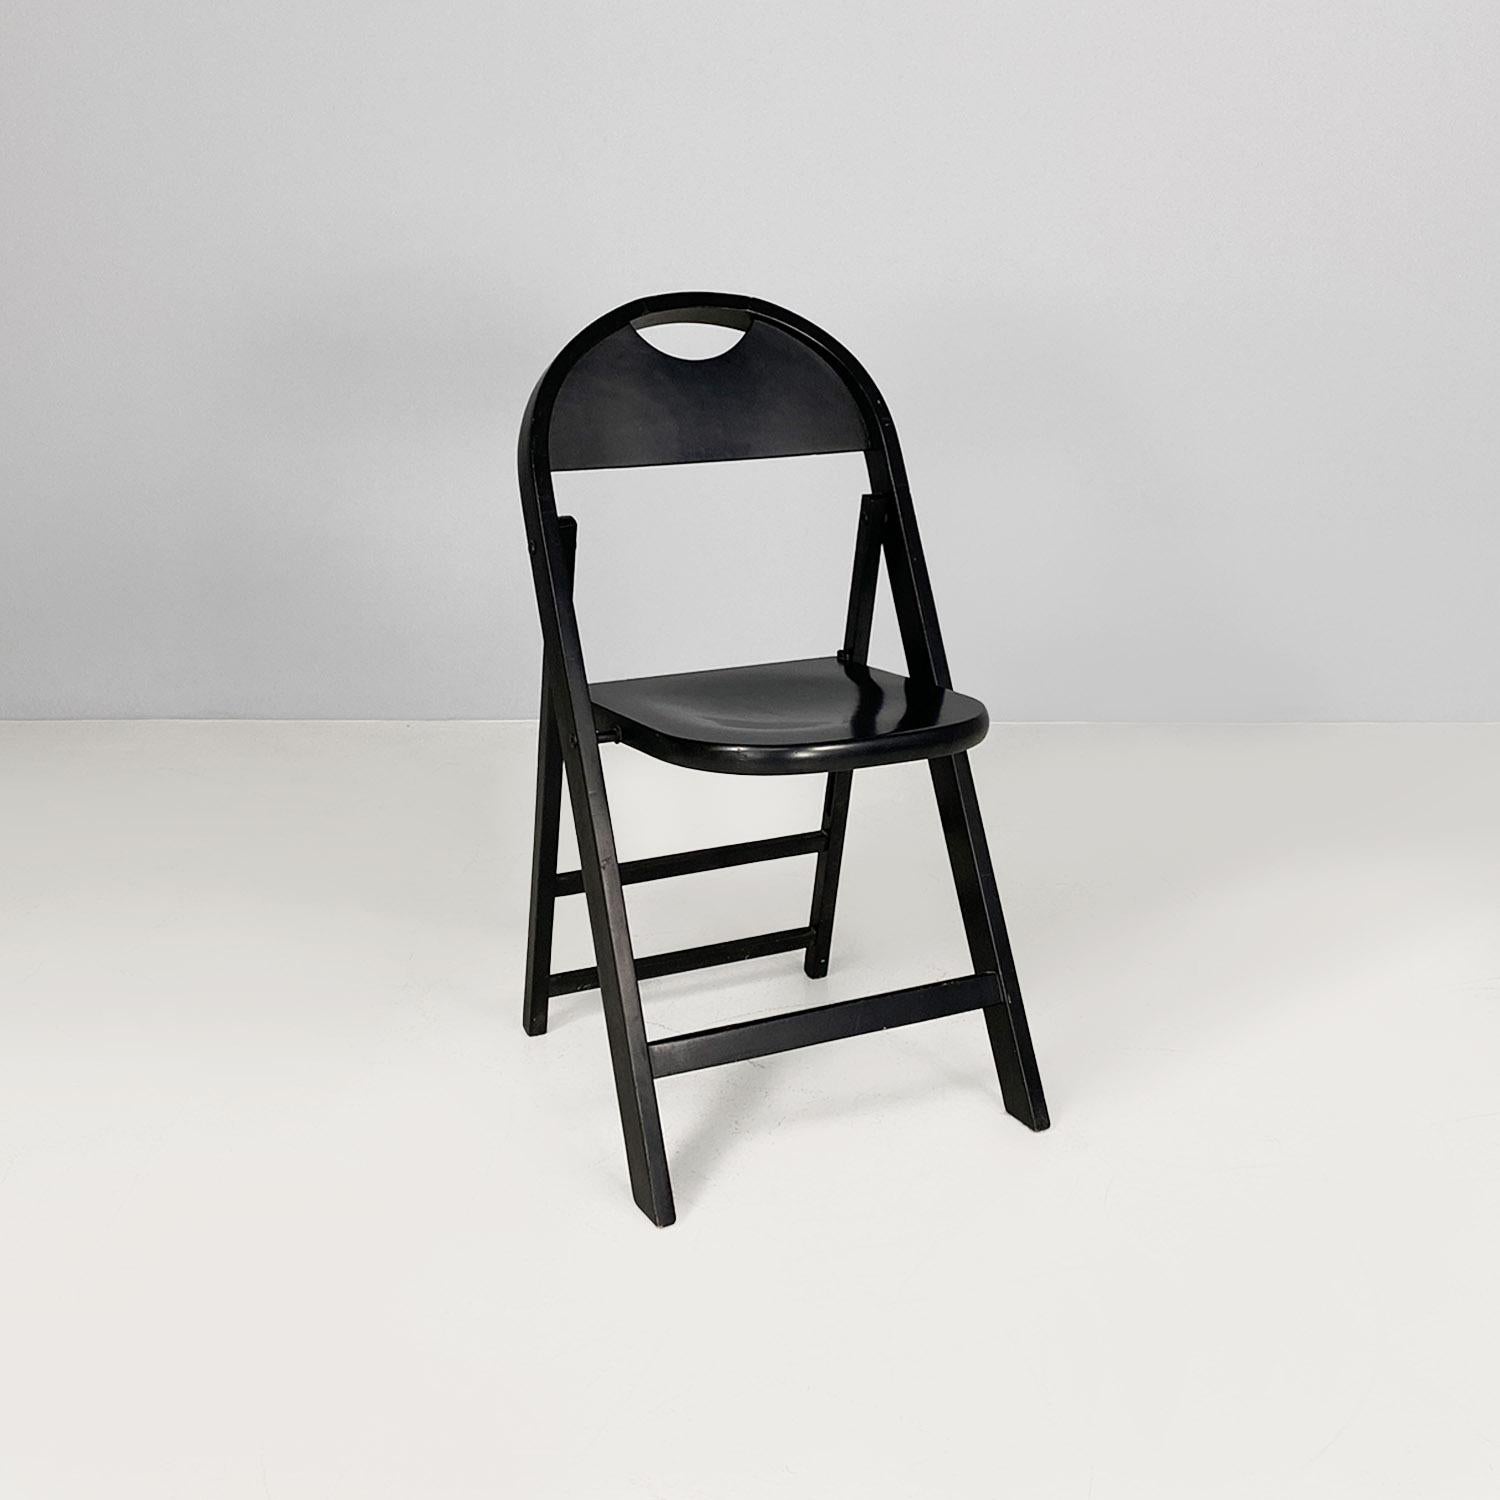 Klappstuhl Modell Tric, ganz aus schwarz lackiertem Holz, mit abgerundeter Sitzfläche und Rückenlehne. Die Beine haben einen rechteckigen Querschnitt.
Produziert um 1960 und entworfen von Achille und Pier Giacomo Castiglioni.
Guter Zustand, leichte